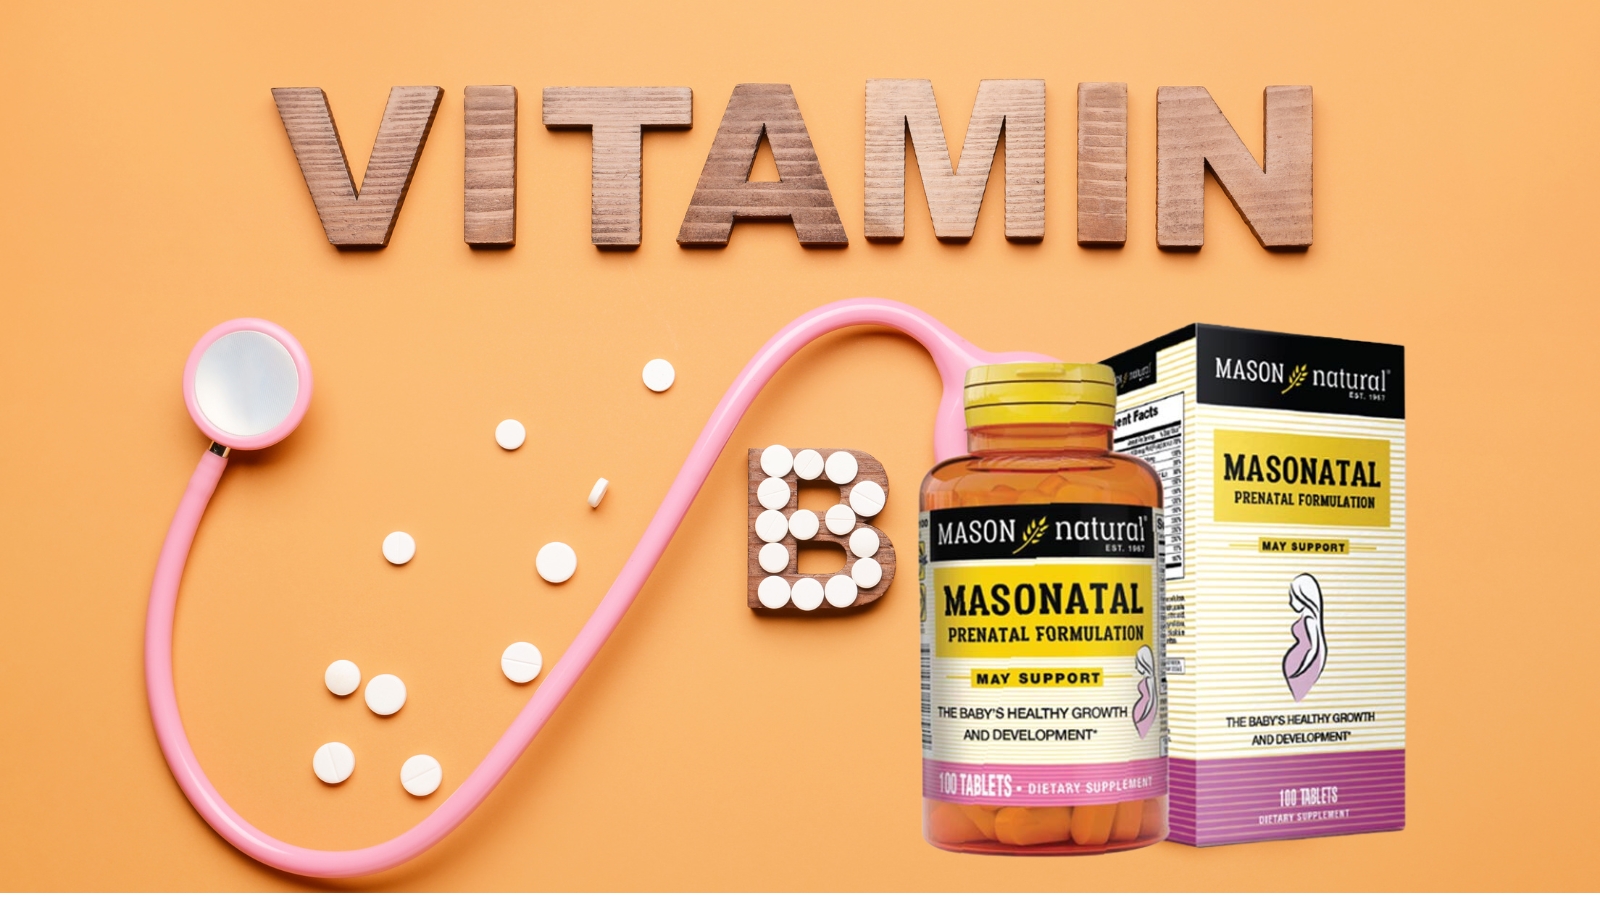 Masonatal Prenatal Formulation bổ sung Vitamin và khoáng chất cần thiết